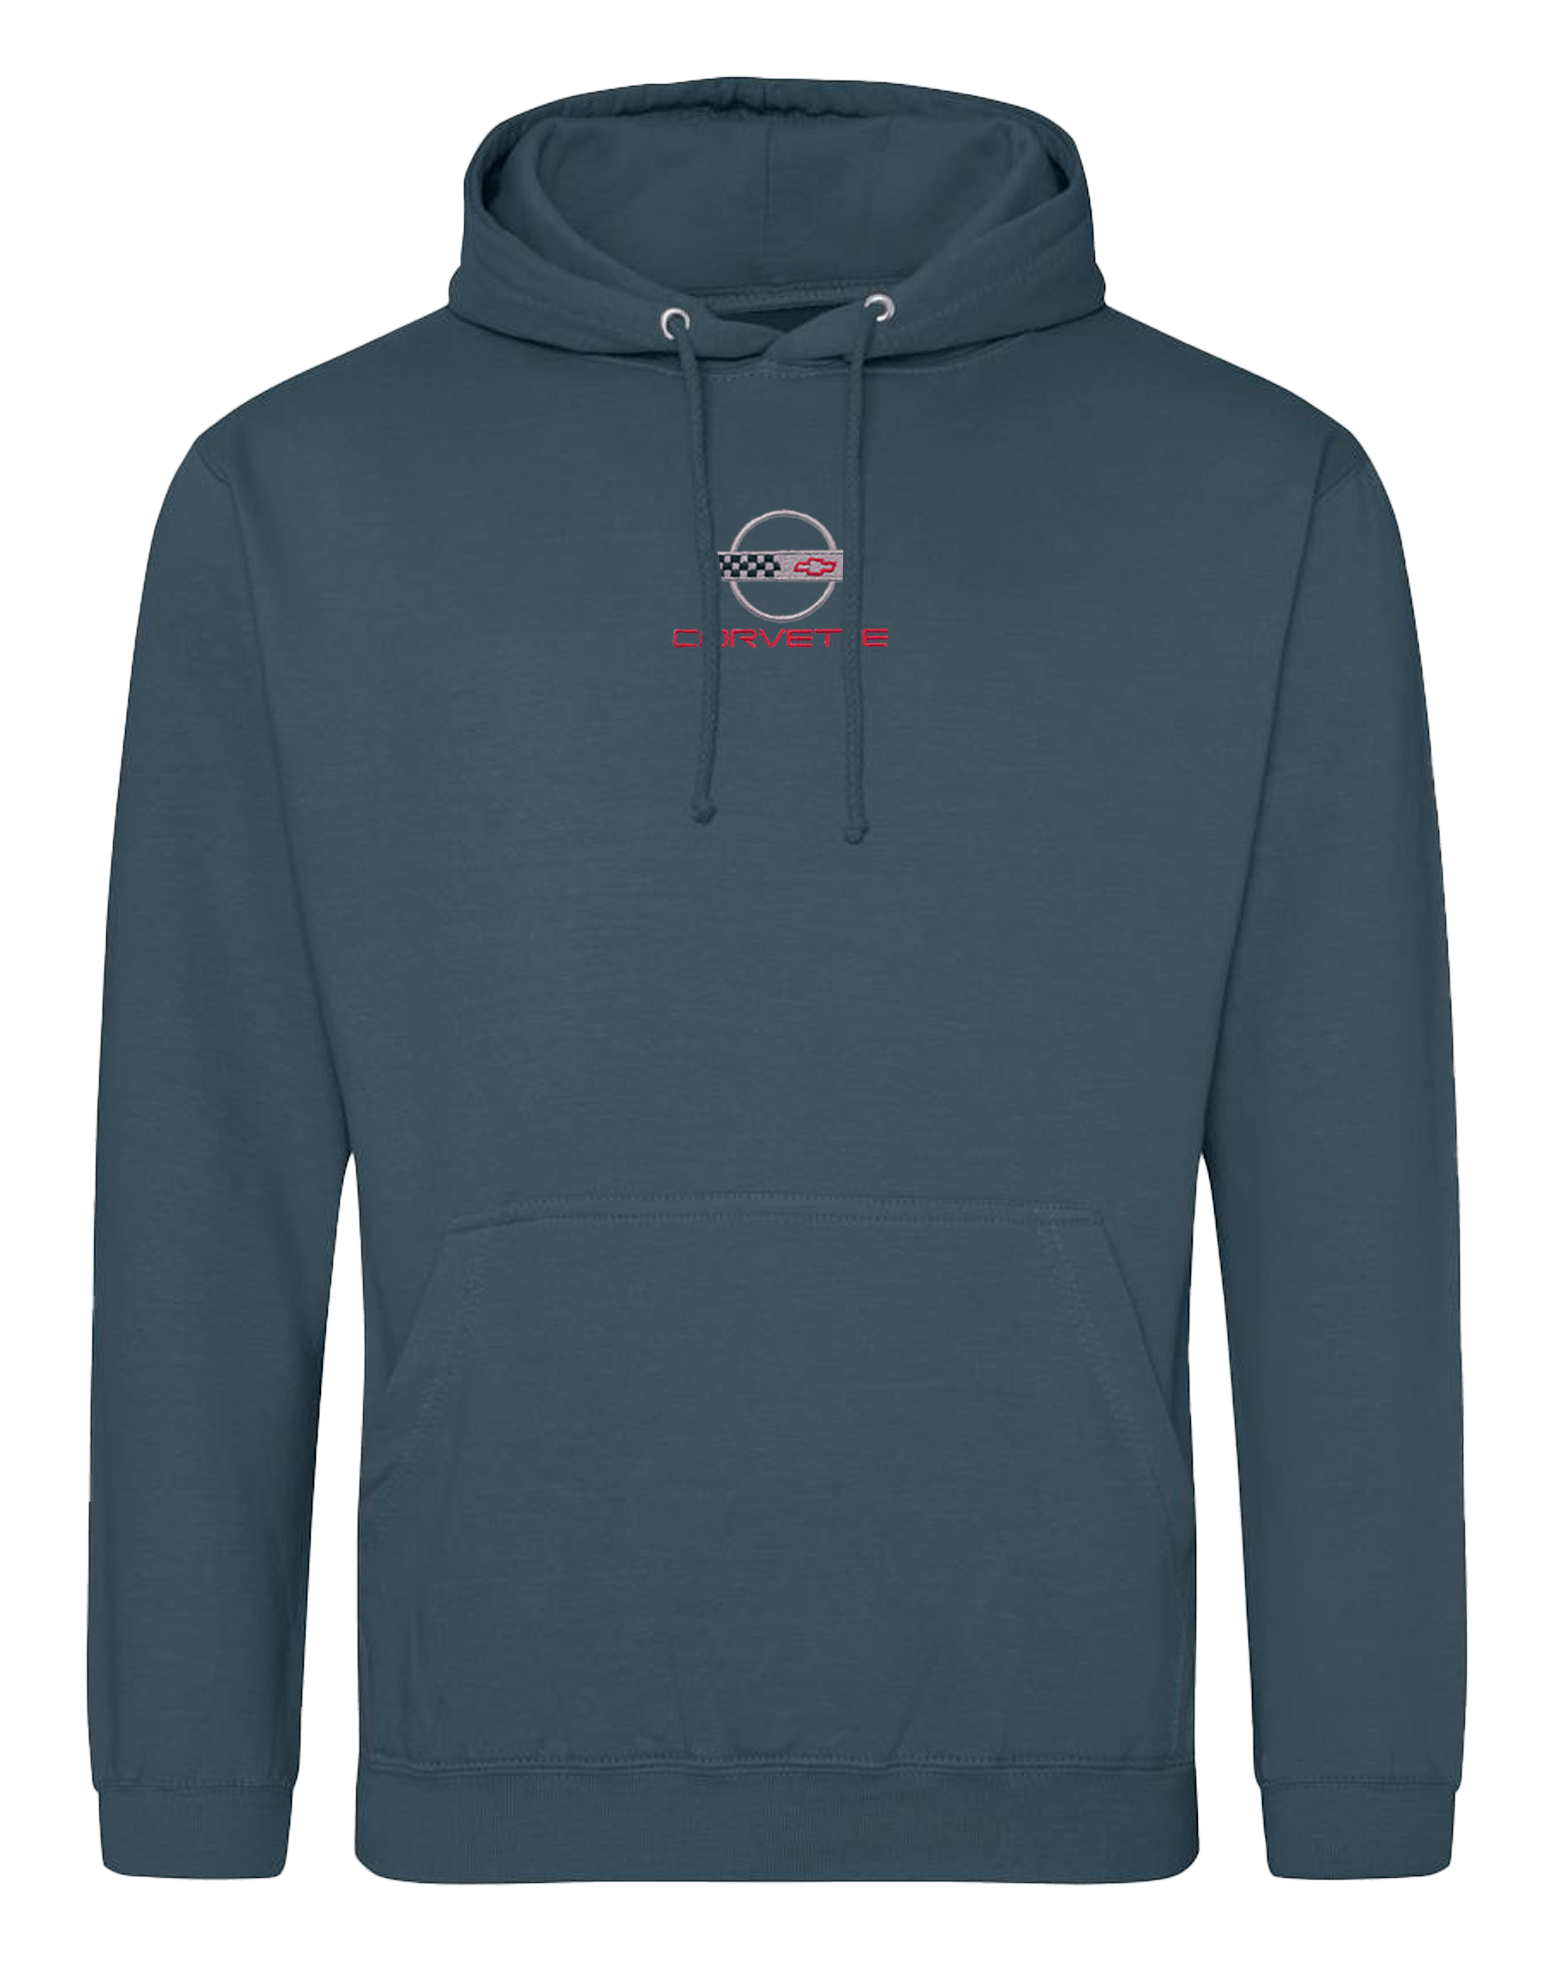 c4-corvette-embroidered-hoodie-cvr60001104-3-corvette-store-online